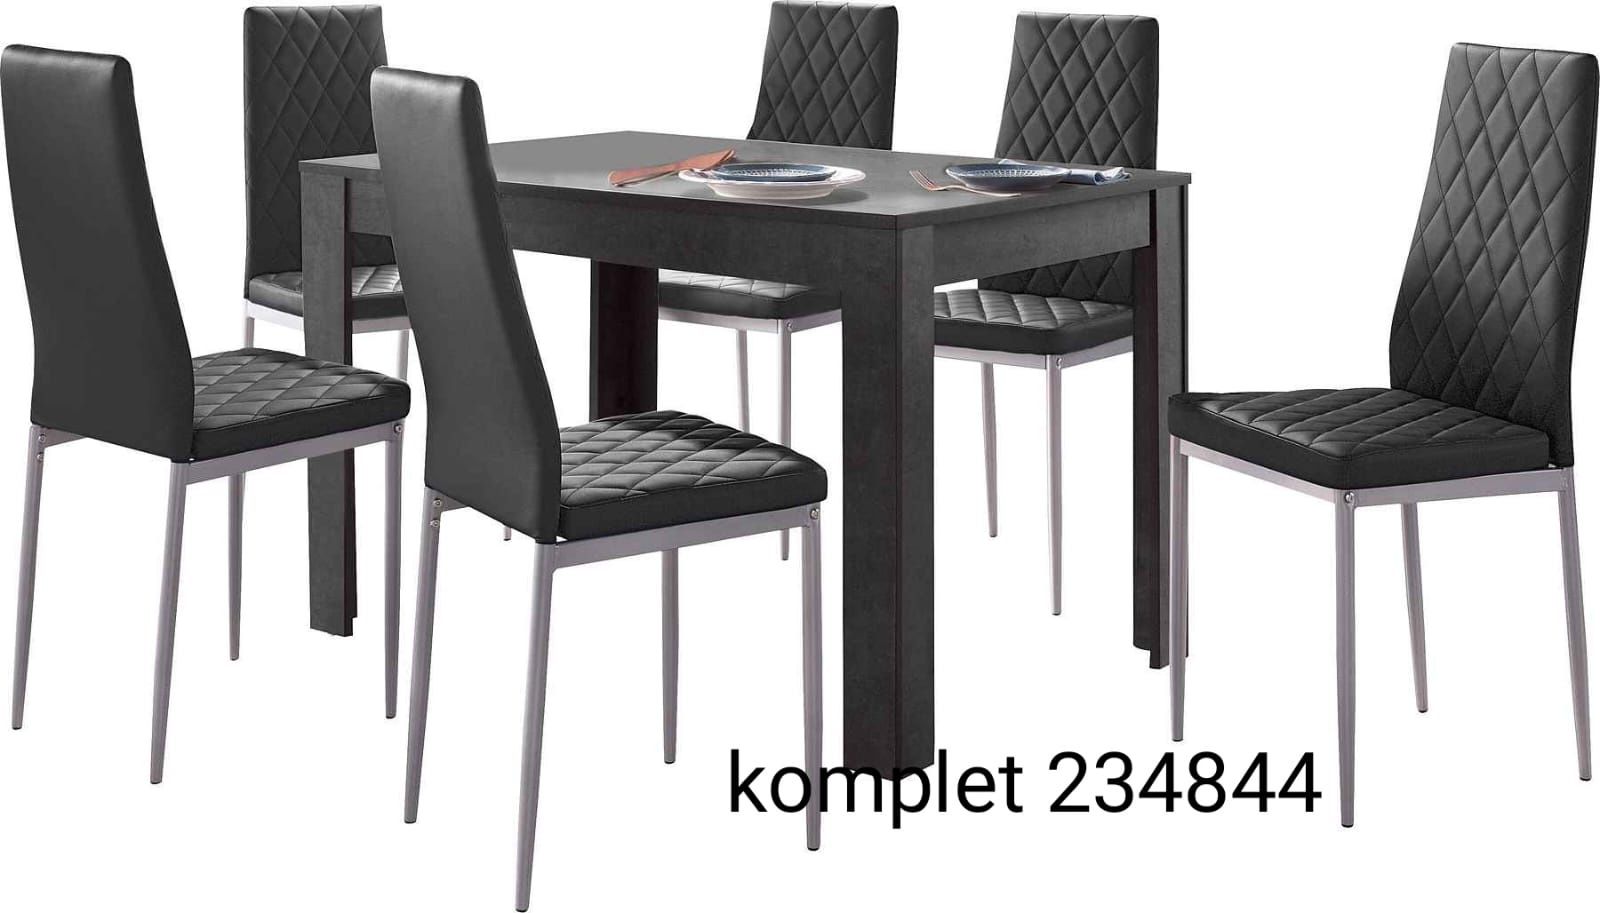 Komplet  stół plus 4 krzesła